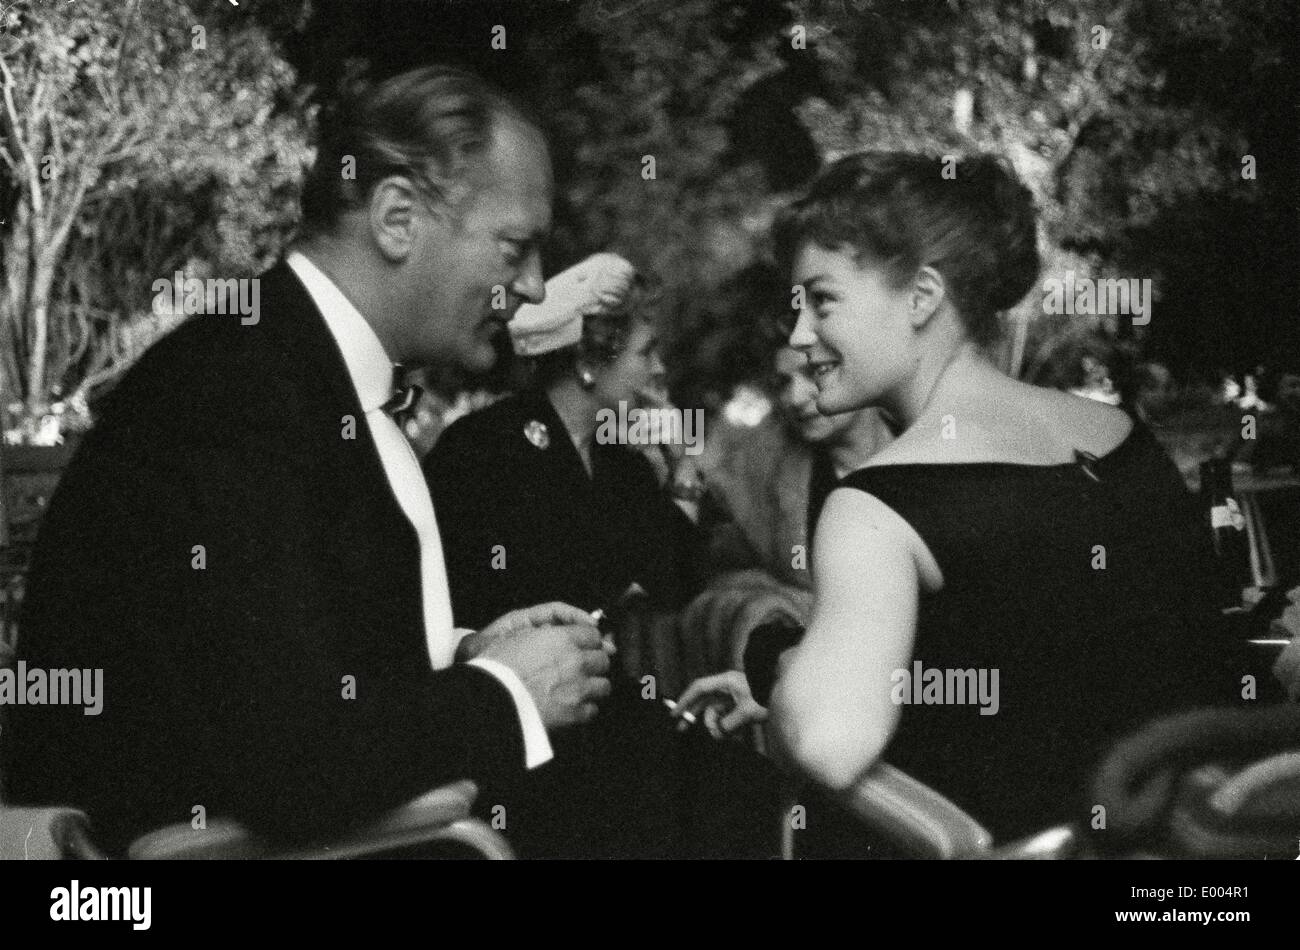 Actrice Romy Schneider et l'acteur Curd Juergens au Festival de Venise, 1957 Banque D'Images